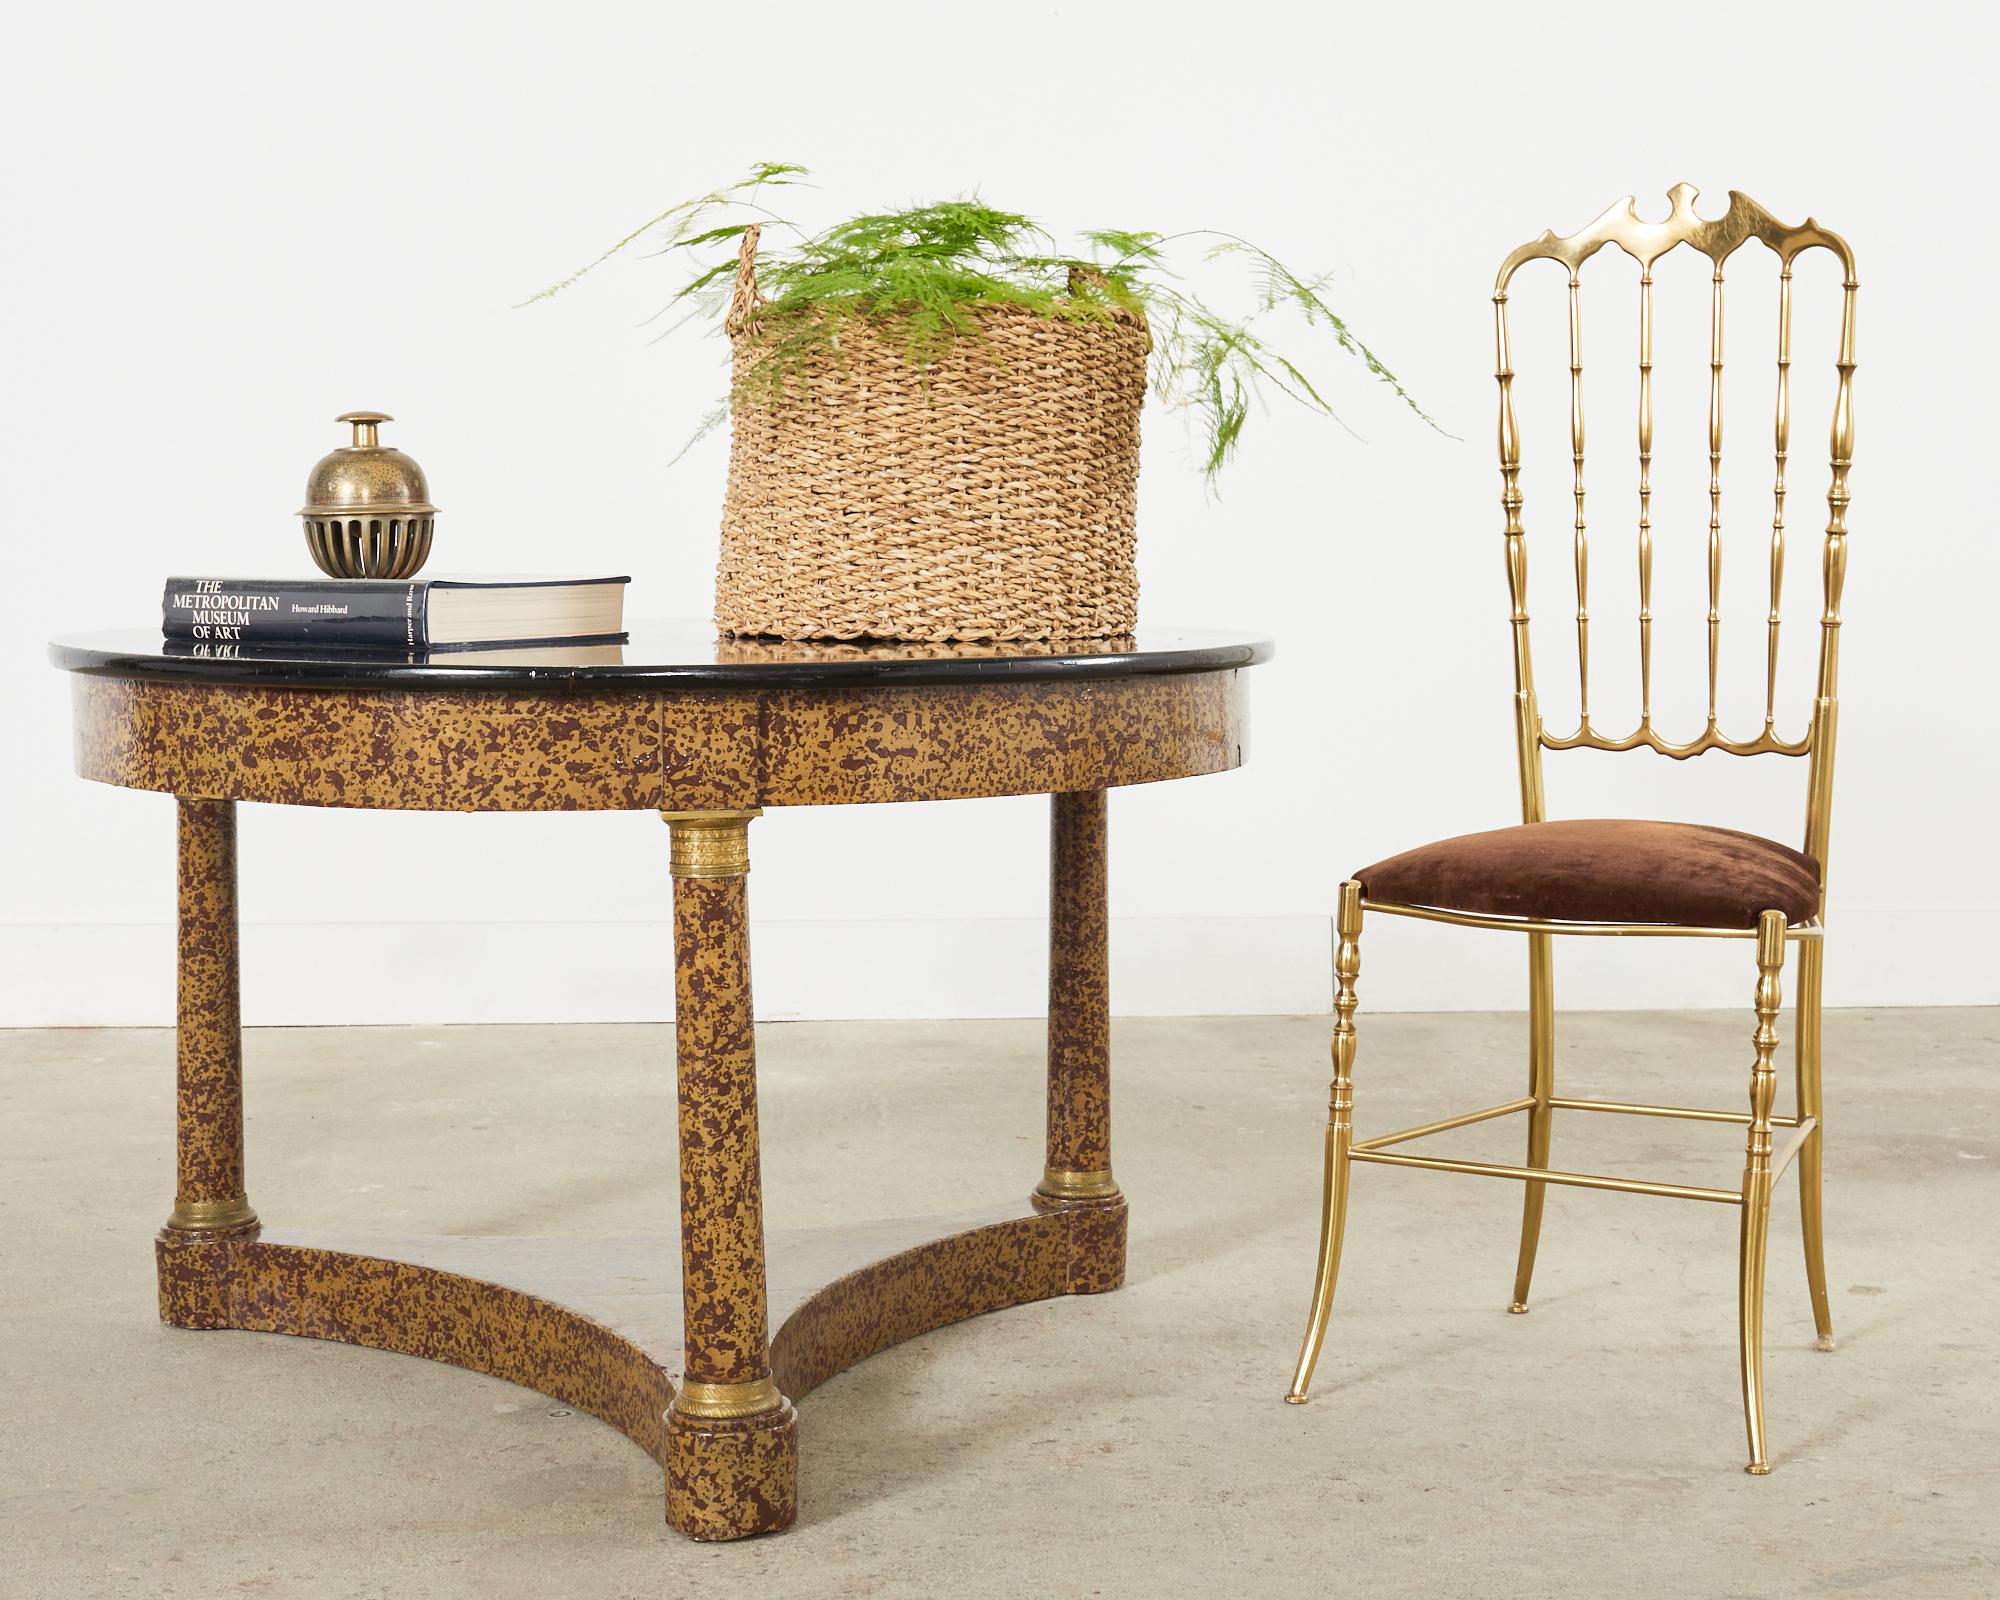 Skurriler runder Couchtisch oder Cocktailtisch, lackiert vom Künstler Ira Yeager (Amerikaner 1938-2022). Der Tisch ist im französischen napoleonischen Empire-Stil gehalten und hat runde Beine aus Bronze. Die atemberaubende Oberfläche hat einen